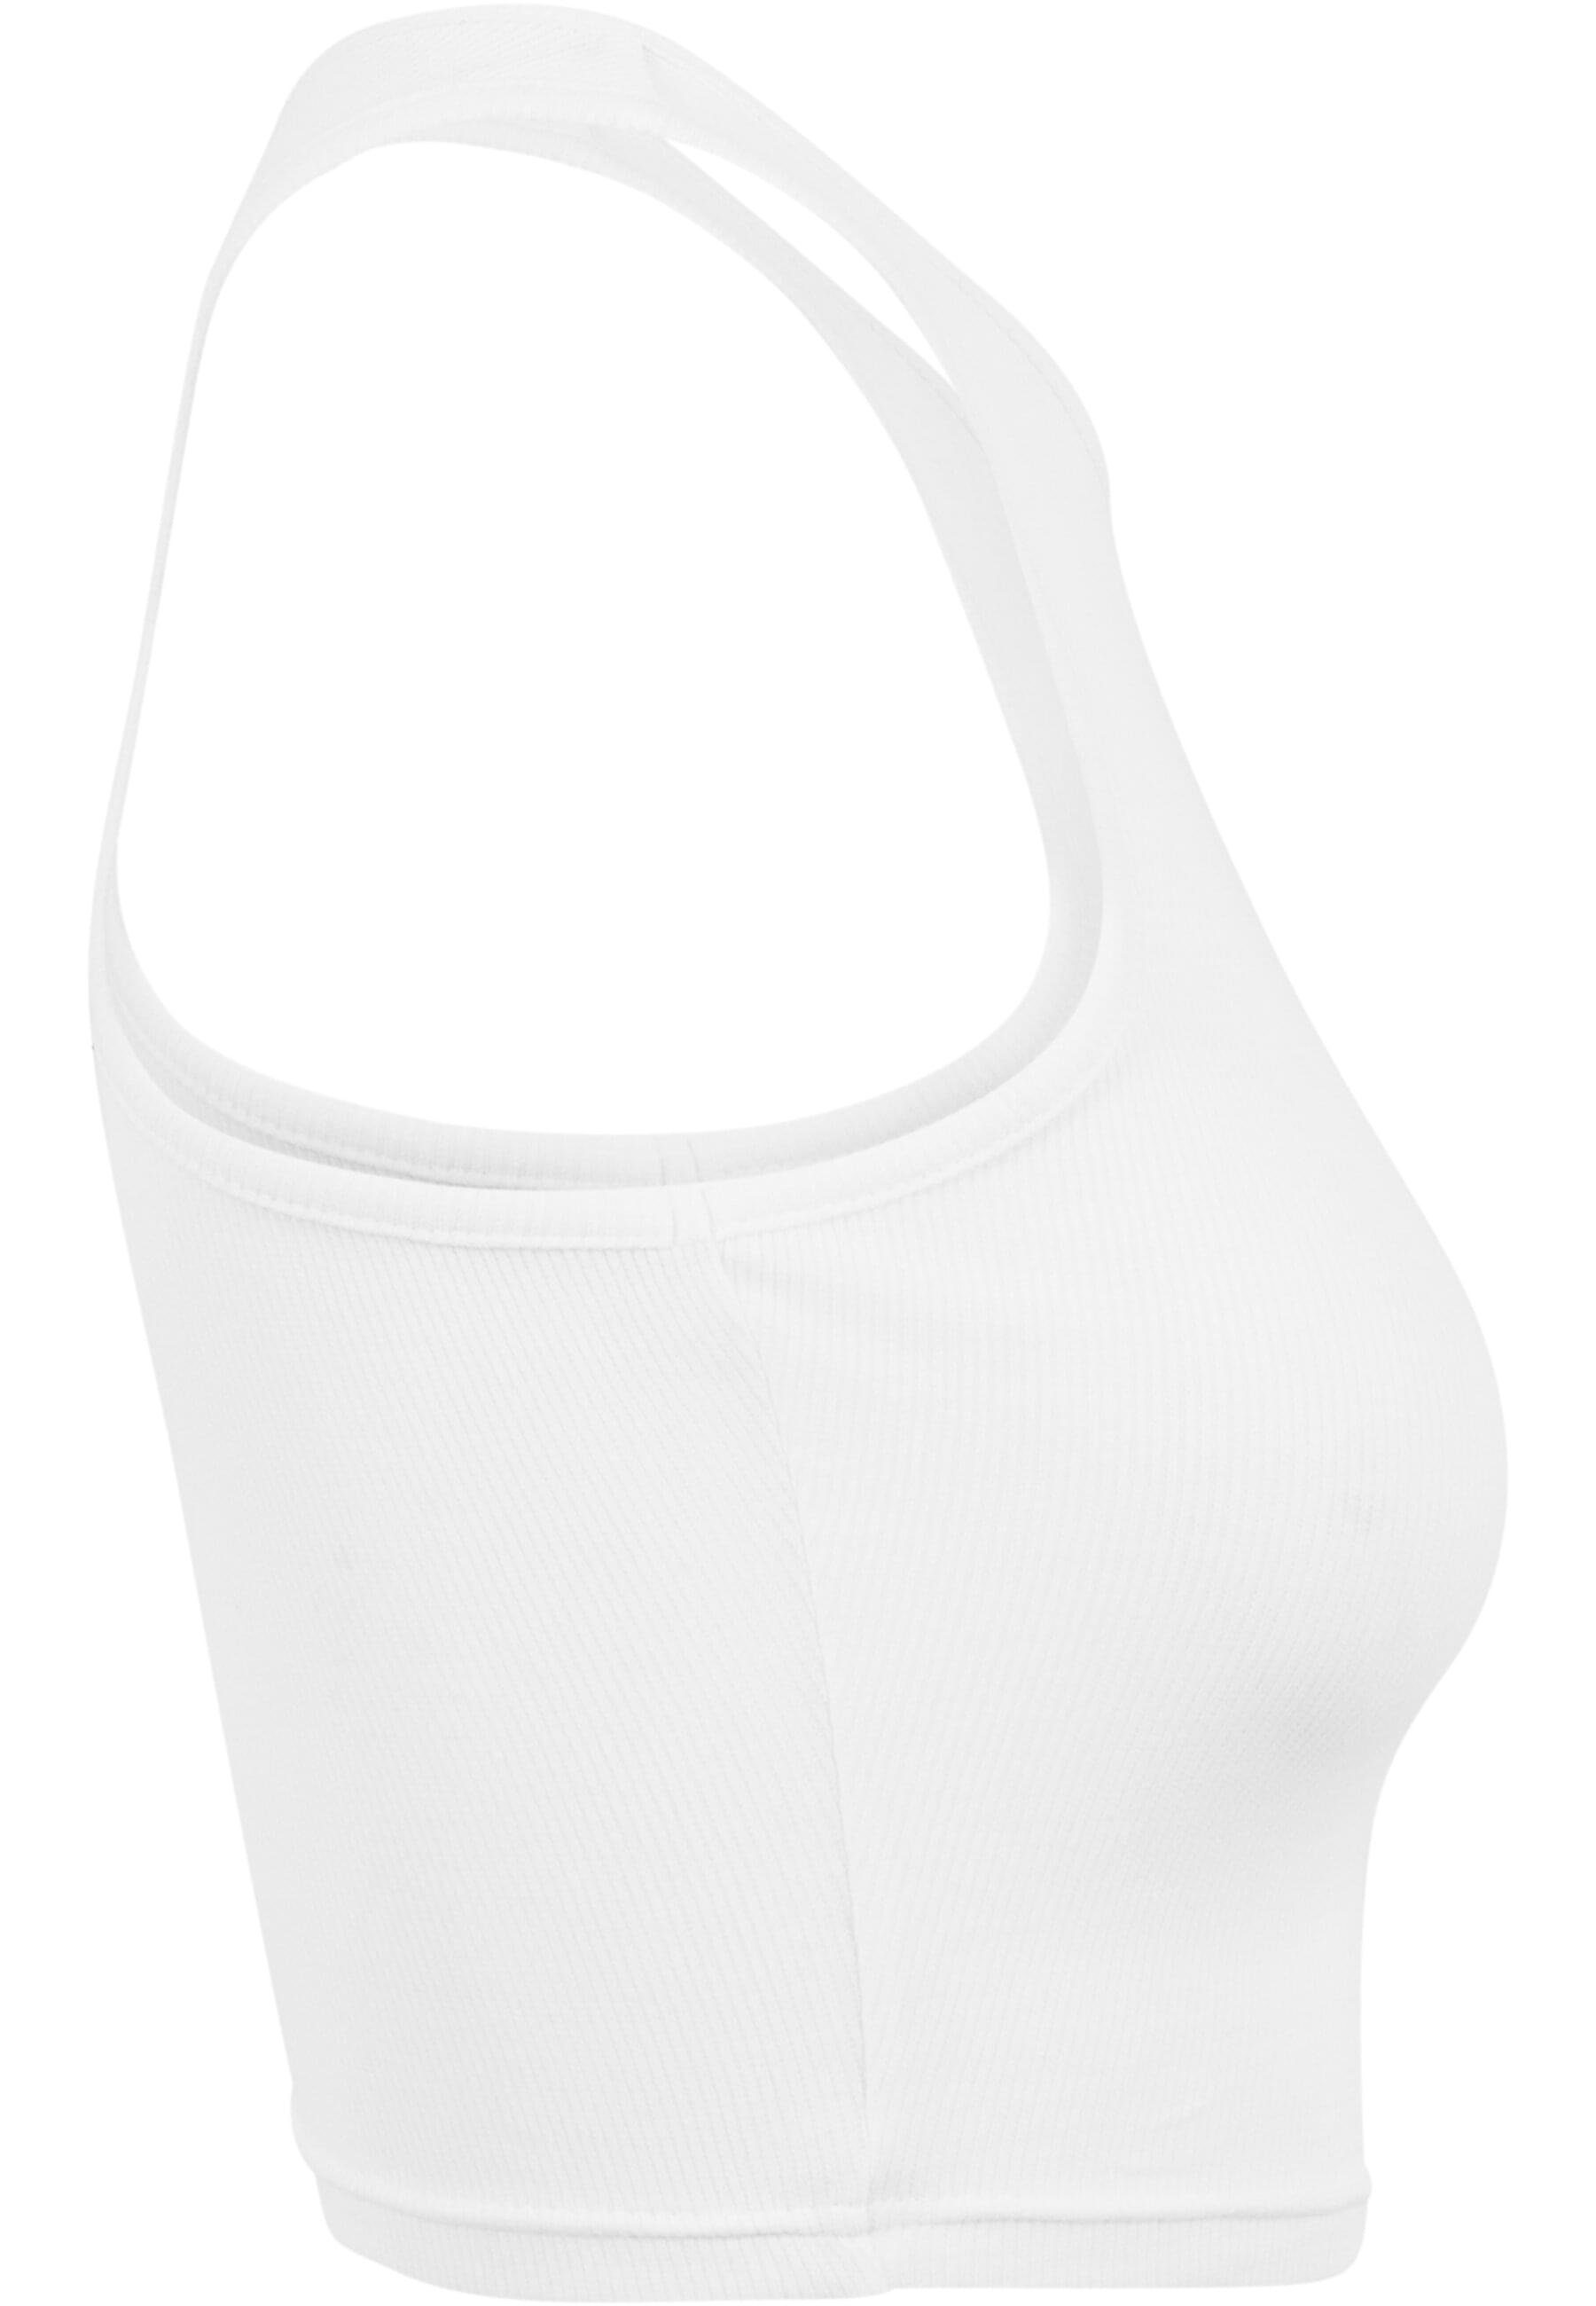 URBAN CLASSICS Top white Ladies Cropped Damen Rib T-Shirt (1-tlg)